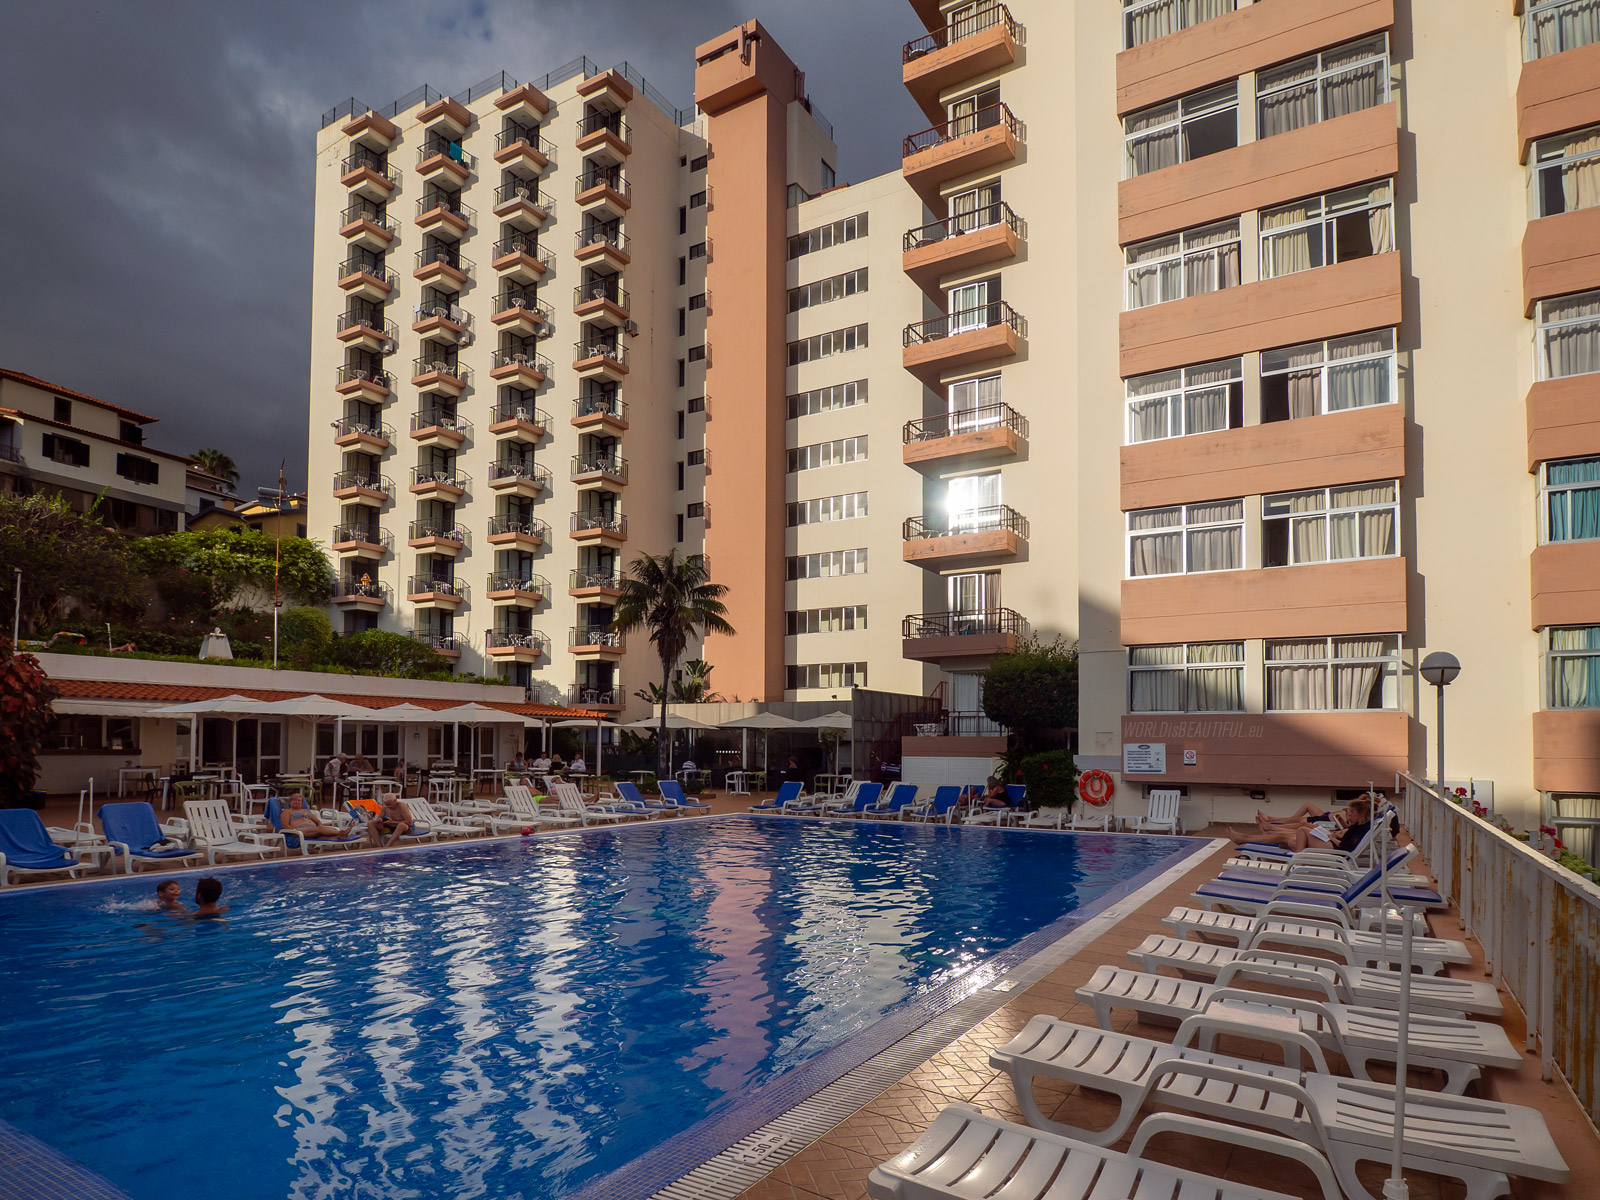 Hotel Dorisol Estrelicia in Funchal